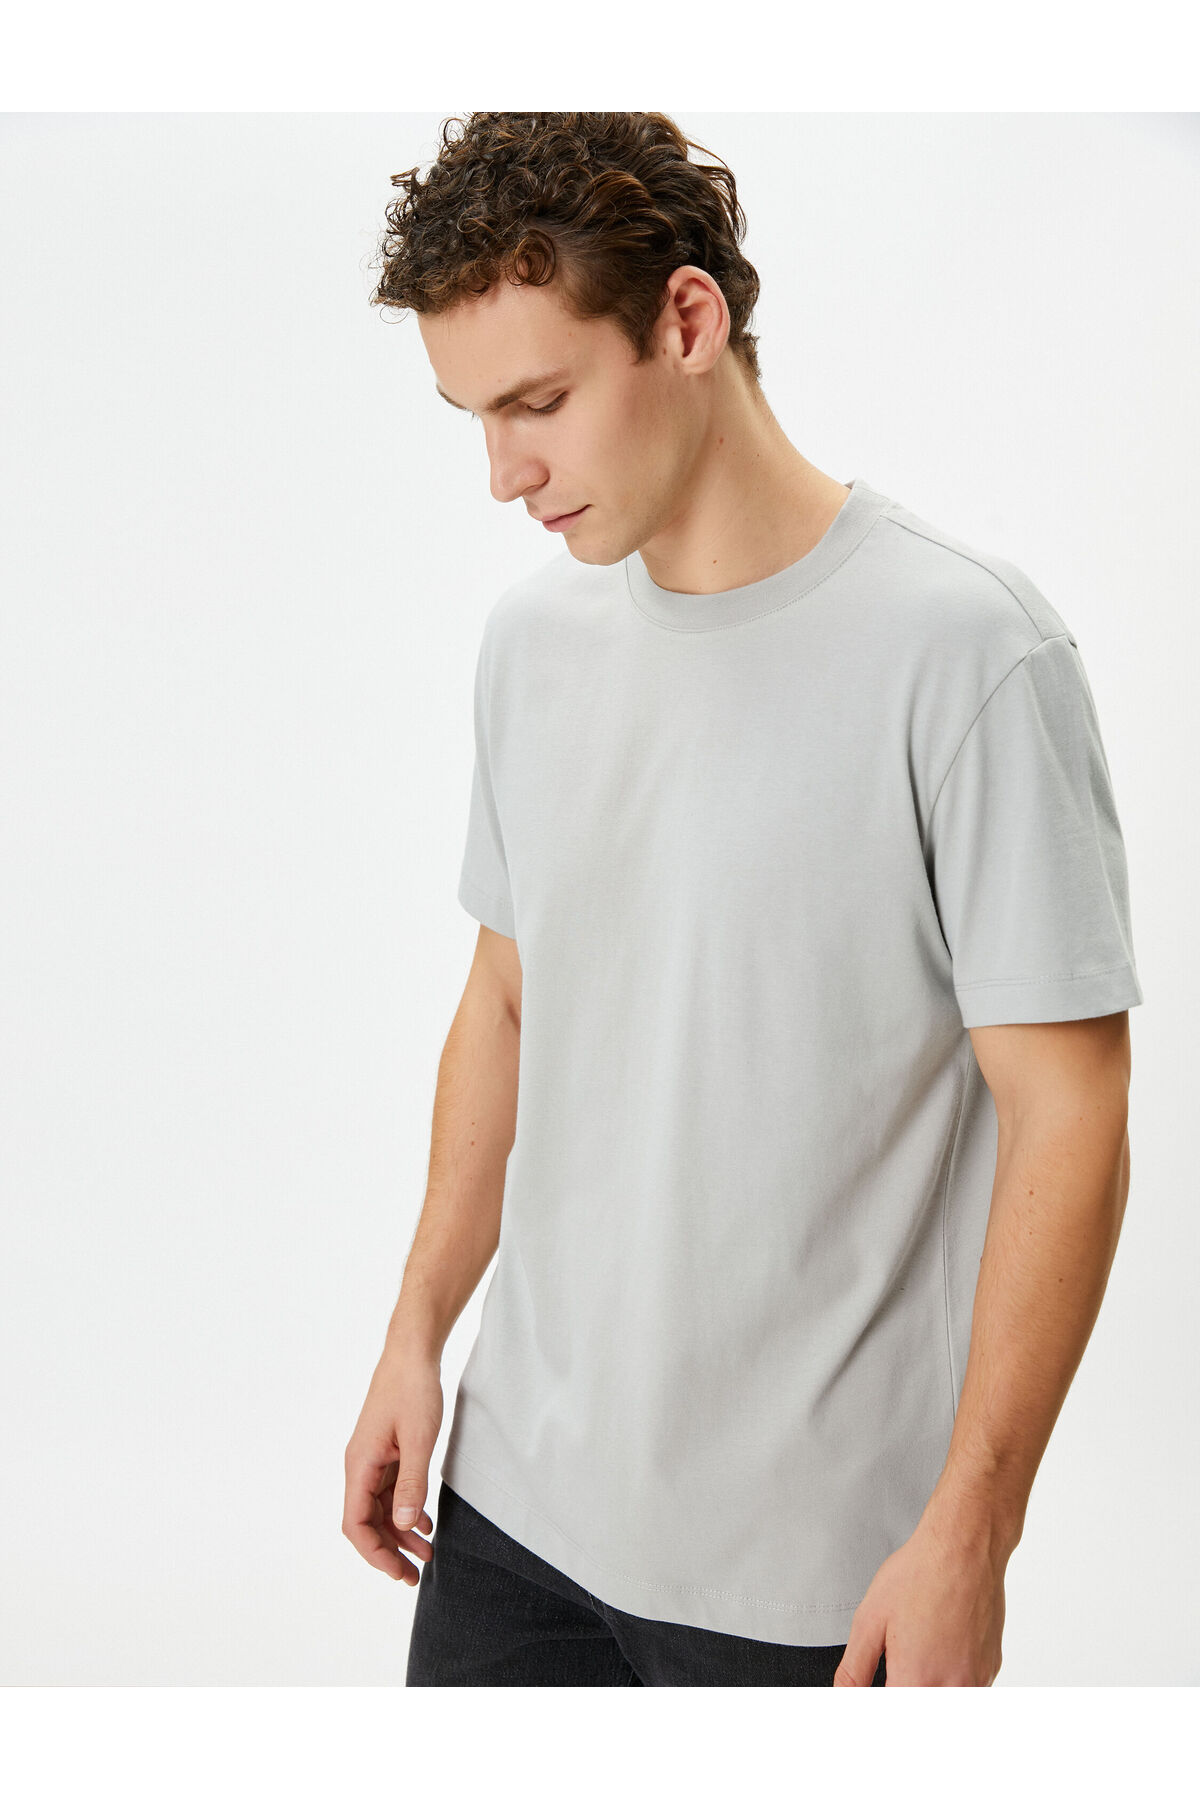 Koton Men's T-Shirt - 4sam10160hk